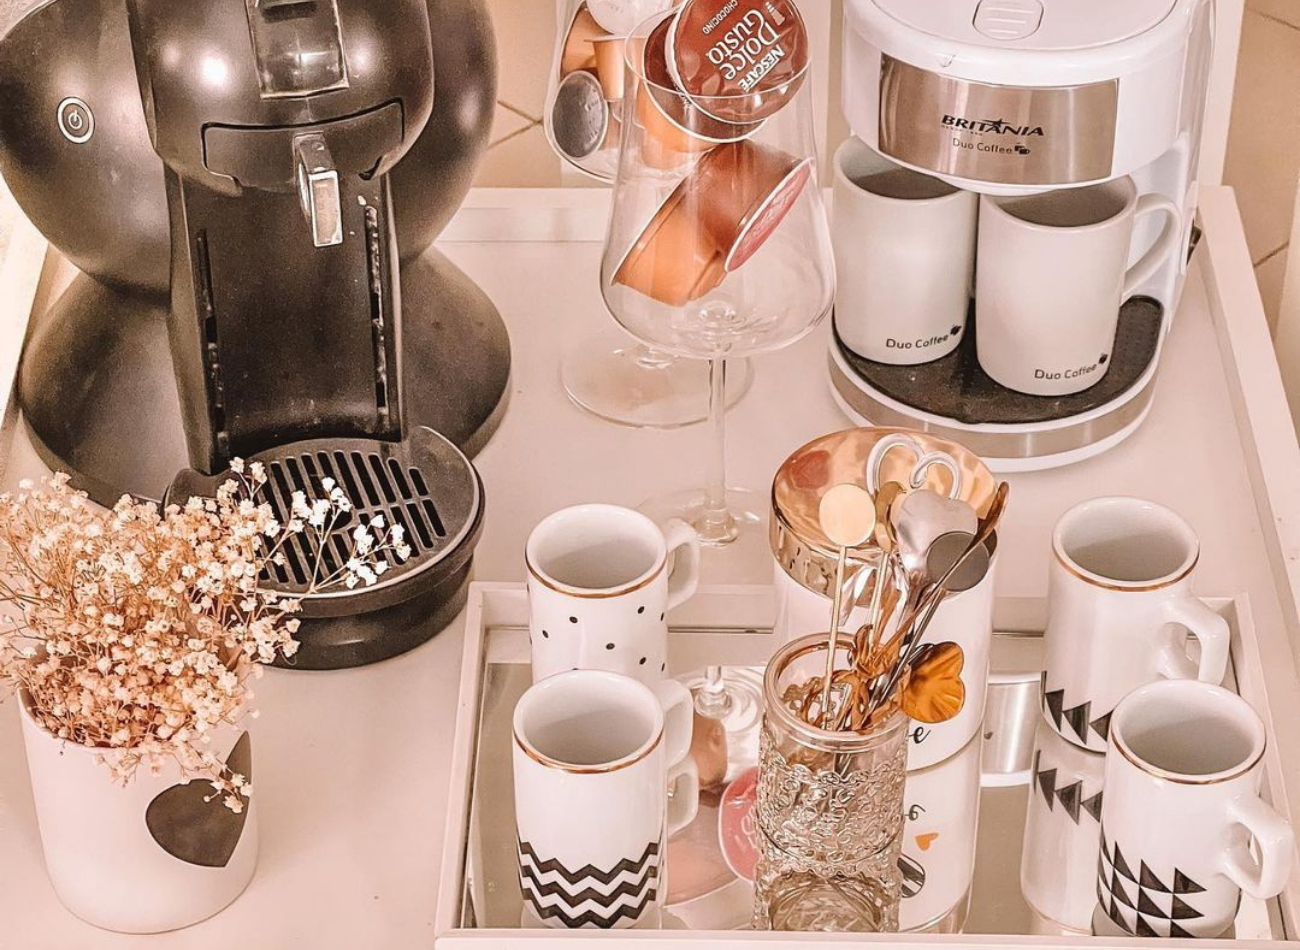 Quer aprender a fazer um cantinho do café na sua casa? Saiba como/ Imagem reproduzida de Instagram